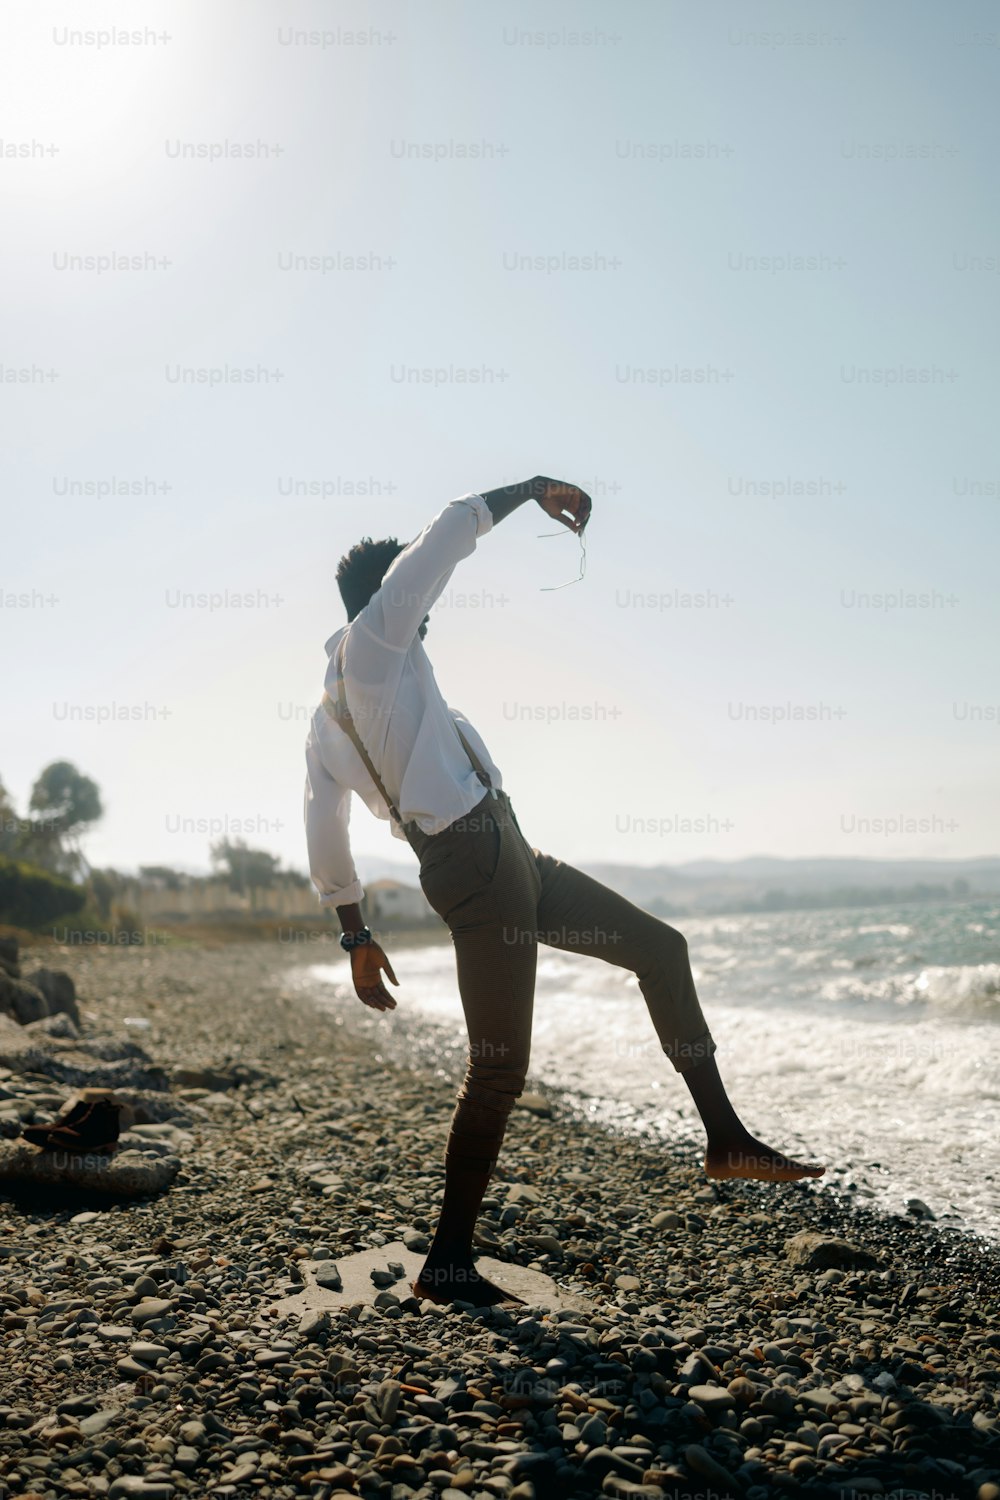 흰 셔츠를 입은 남자가 해변에서 요가 포즈를 취하고 있다